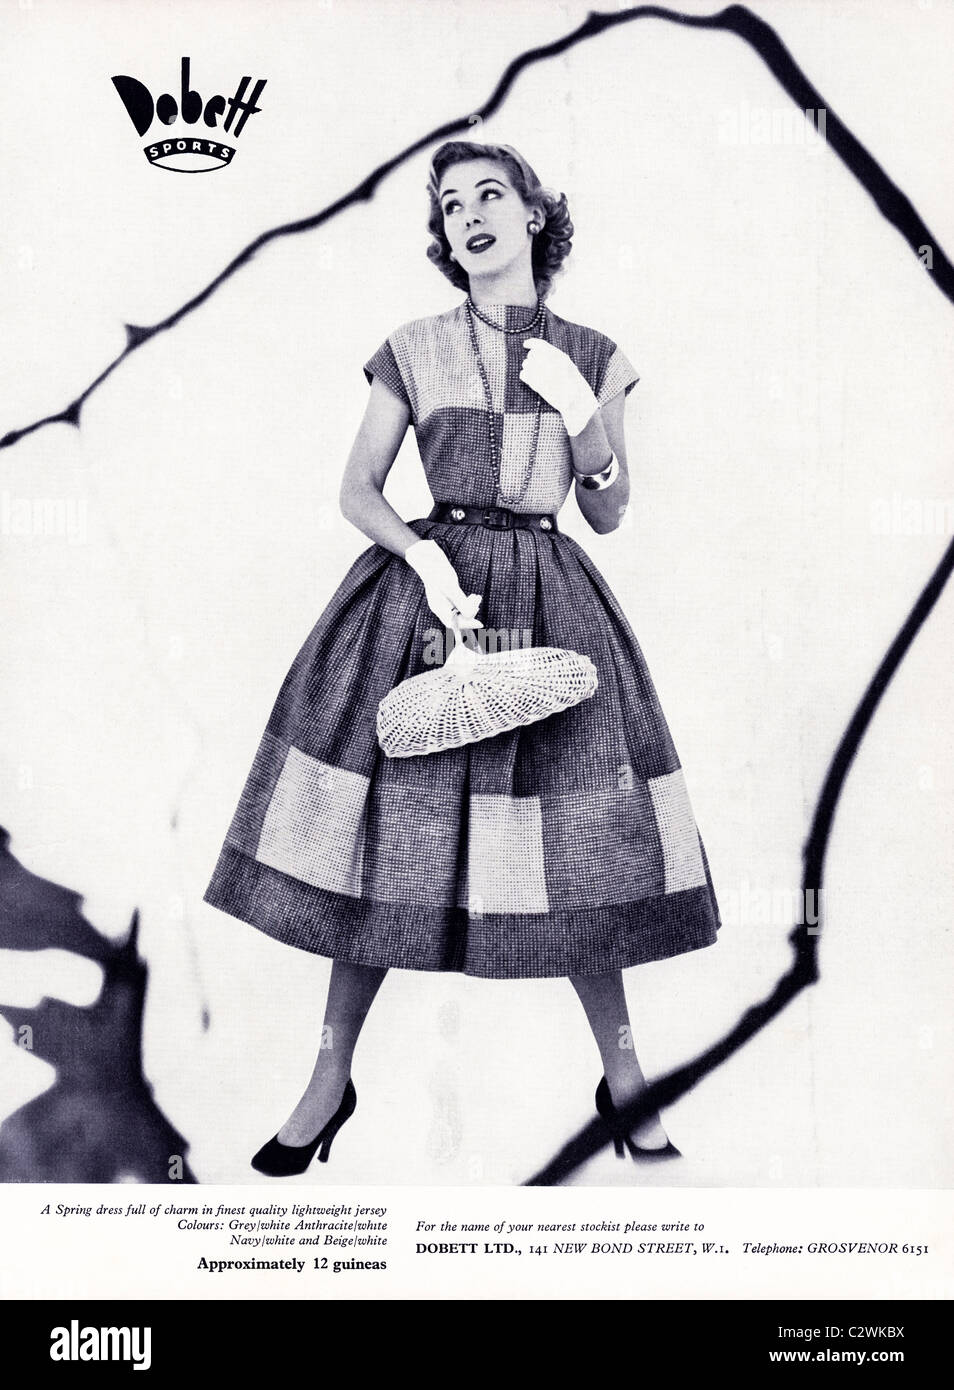 Pagina piena annuncio nella rivista di moda circa degli anni cinquanta per DOBETT Sport Abbigliamento donna Foto Stock